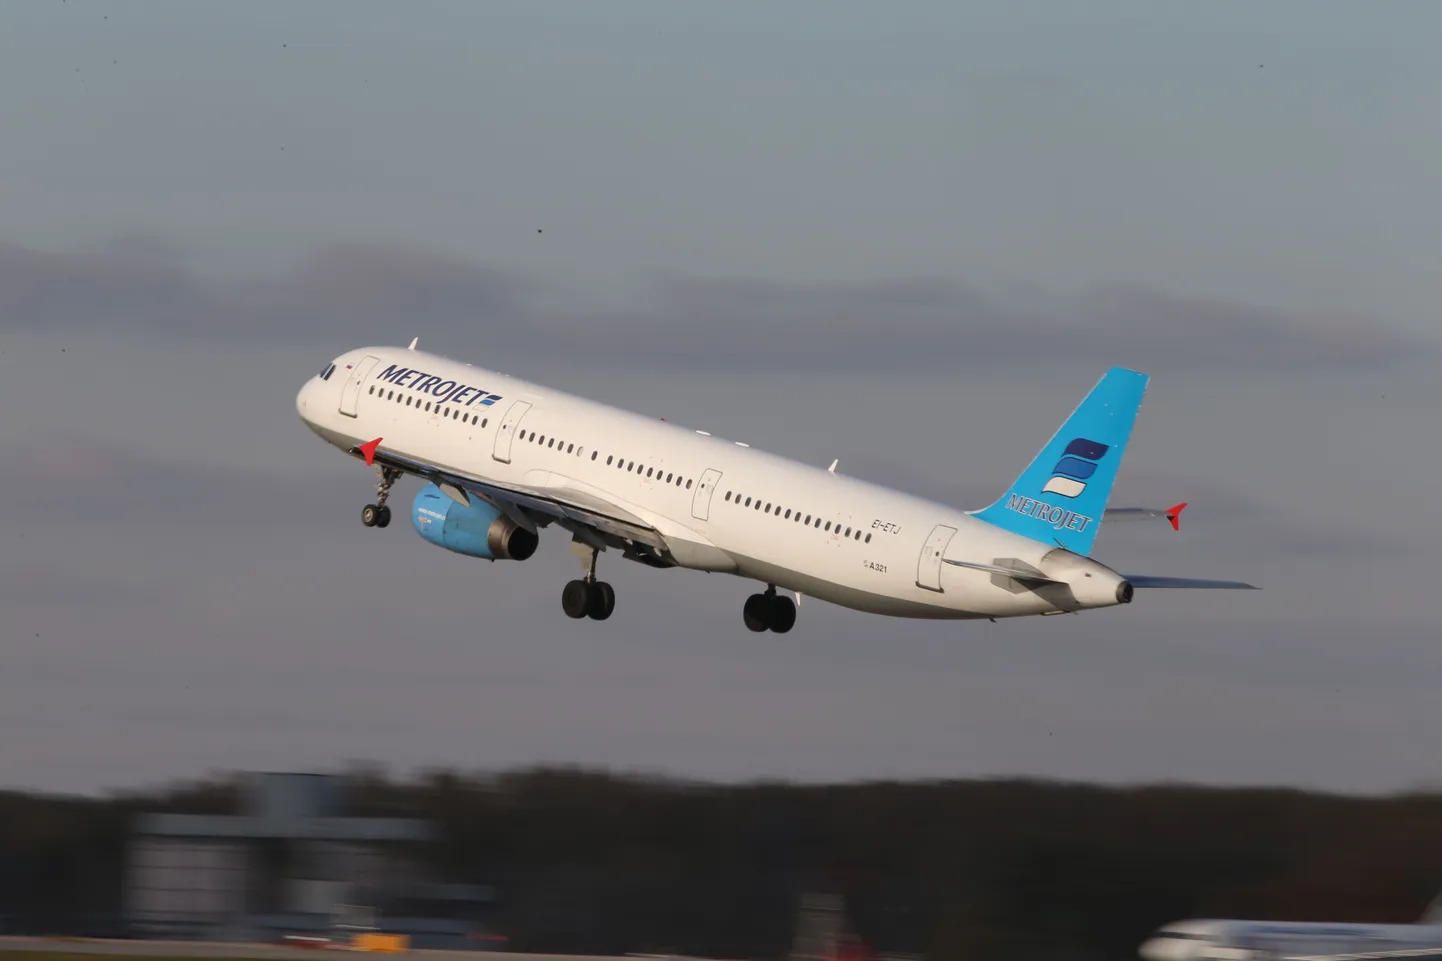 Kogalõmavia reisilennuk Airbus A321 sabanumbriga EI-ETJ selle aasta oktoobris Moskva Domodedovo lennuväljal – sama lennuk, mis täna Egiptuses alla kukkus.